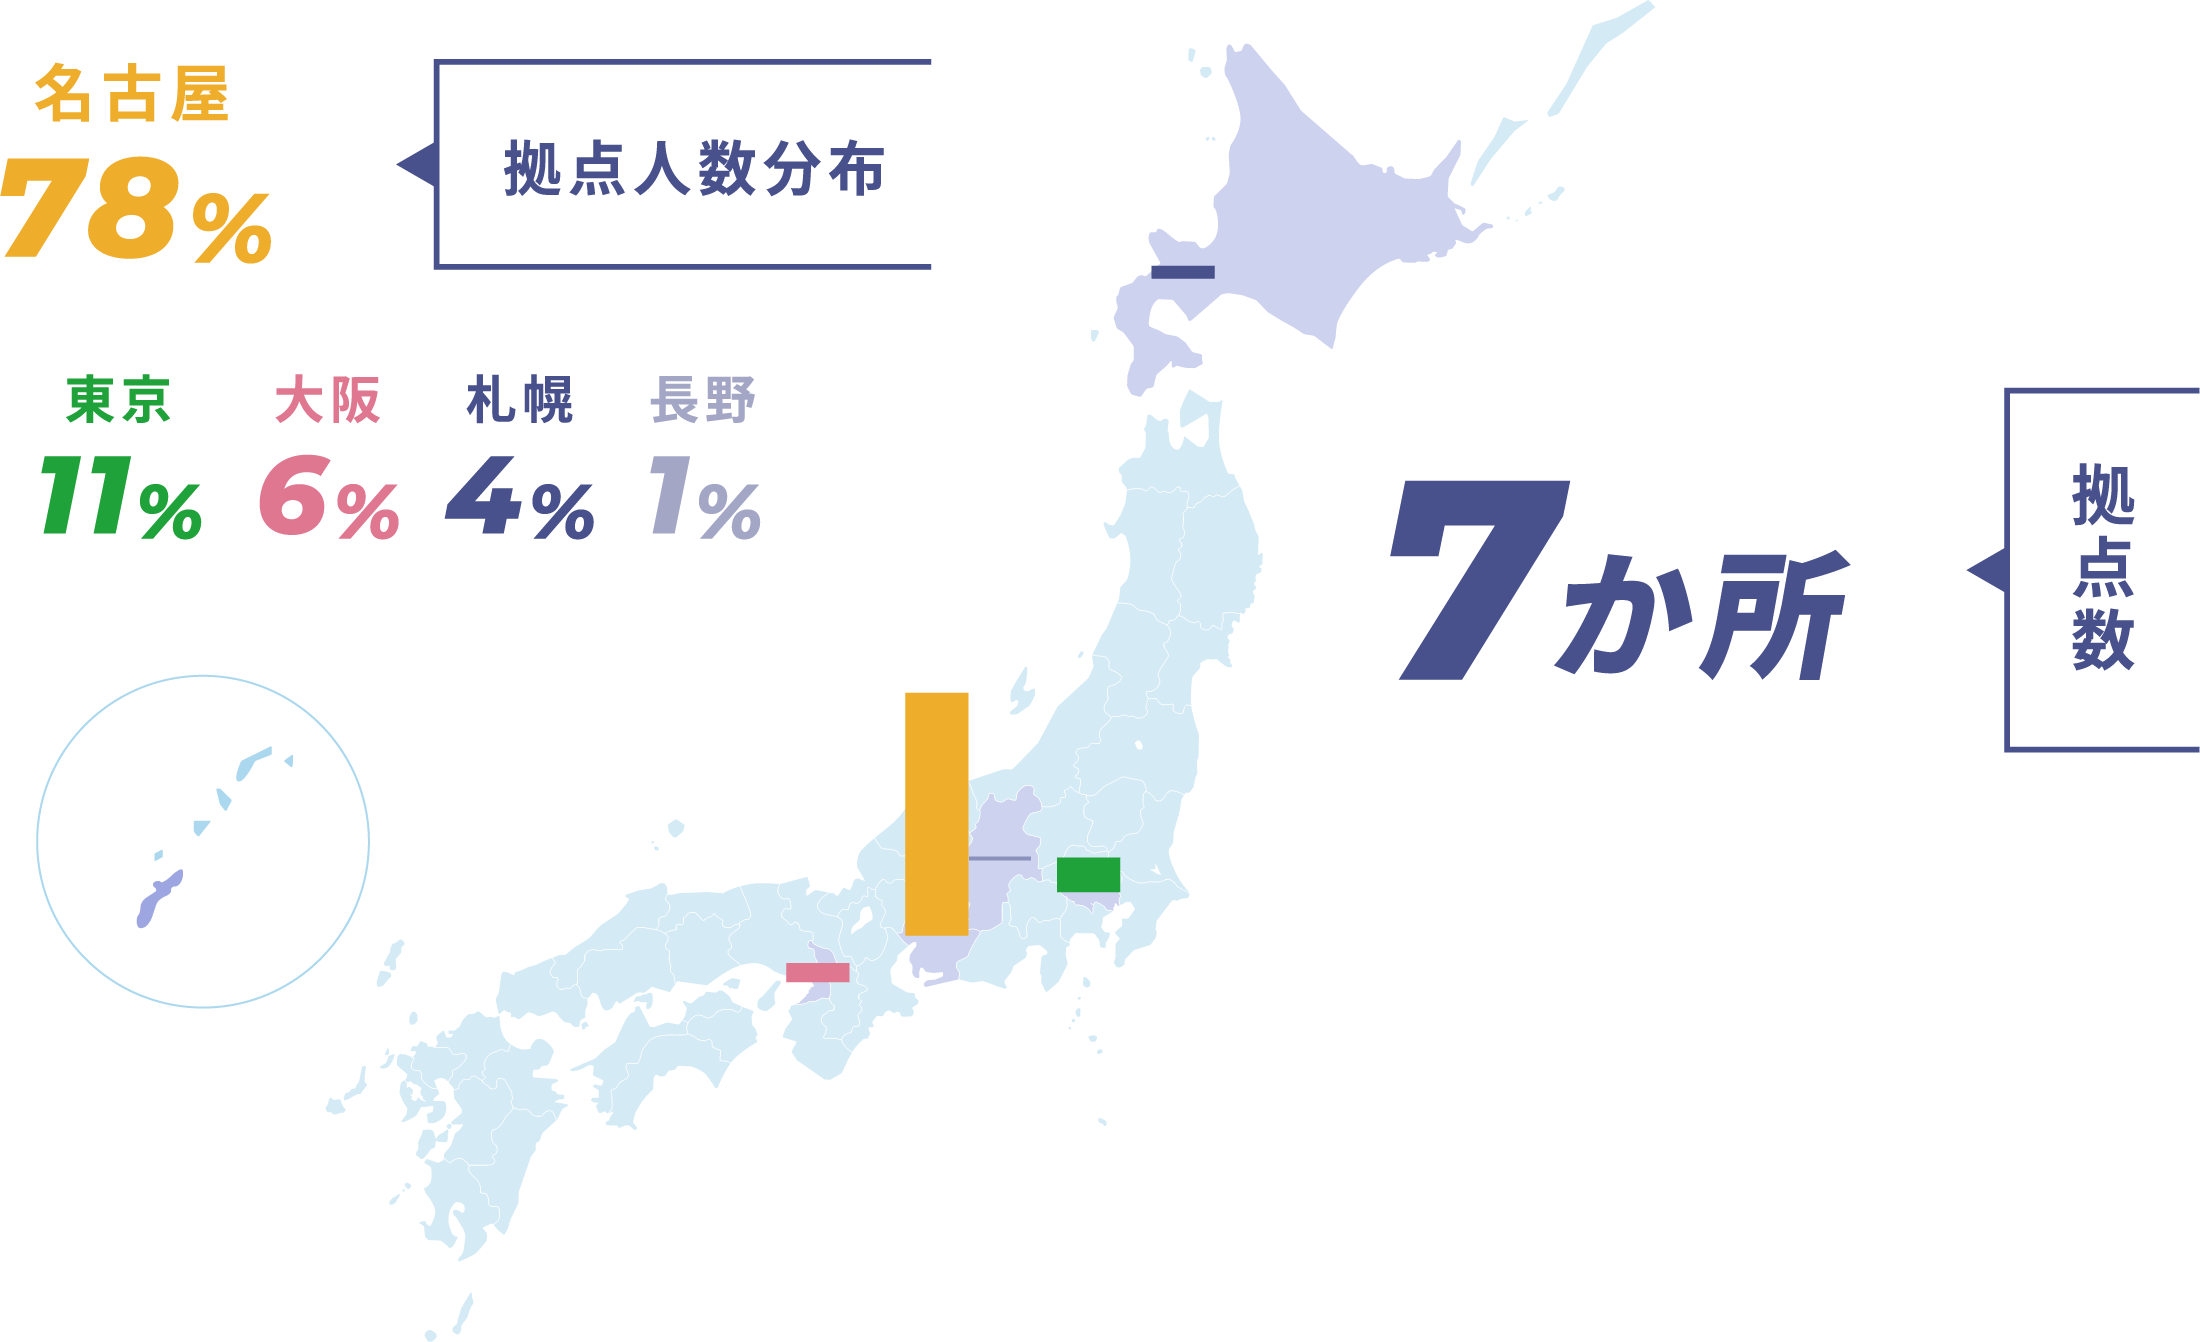 拠点人物分布 東京11% 大阪6% 札幌4% 長野1% ,拠点数７か所